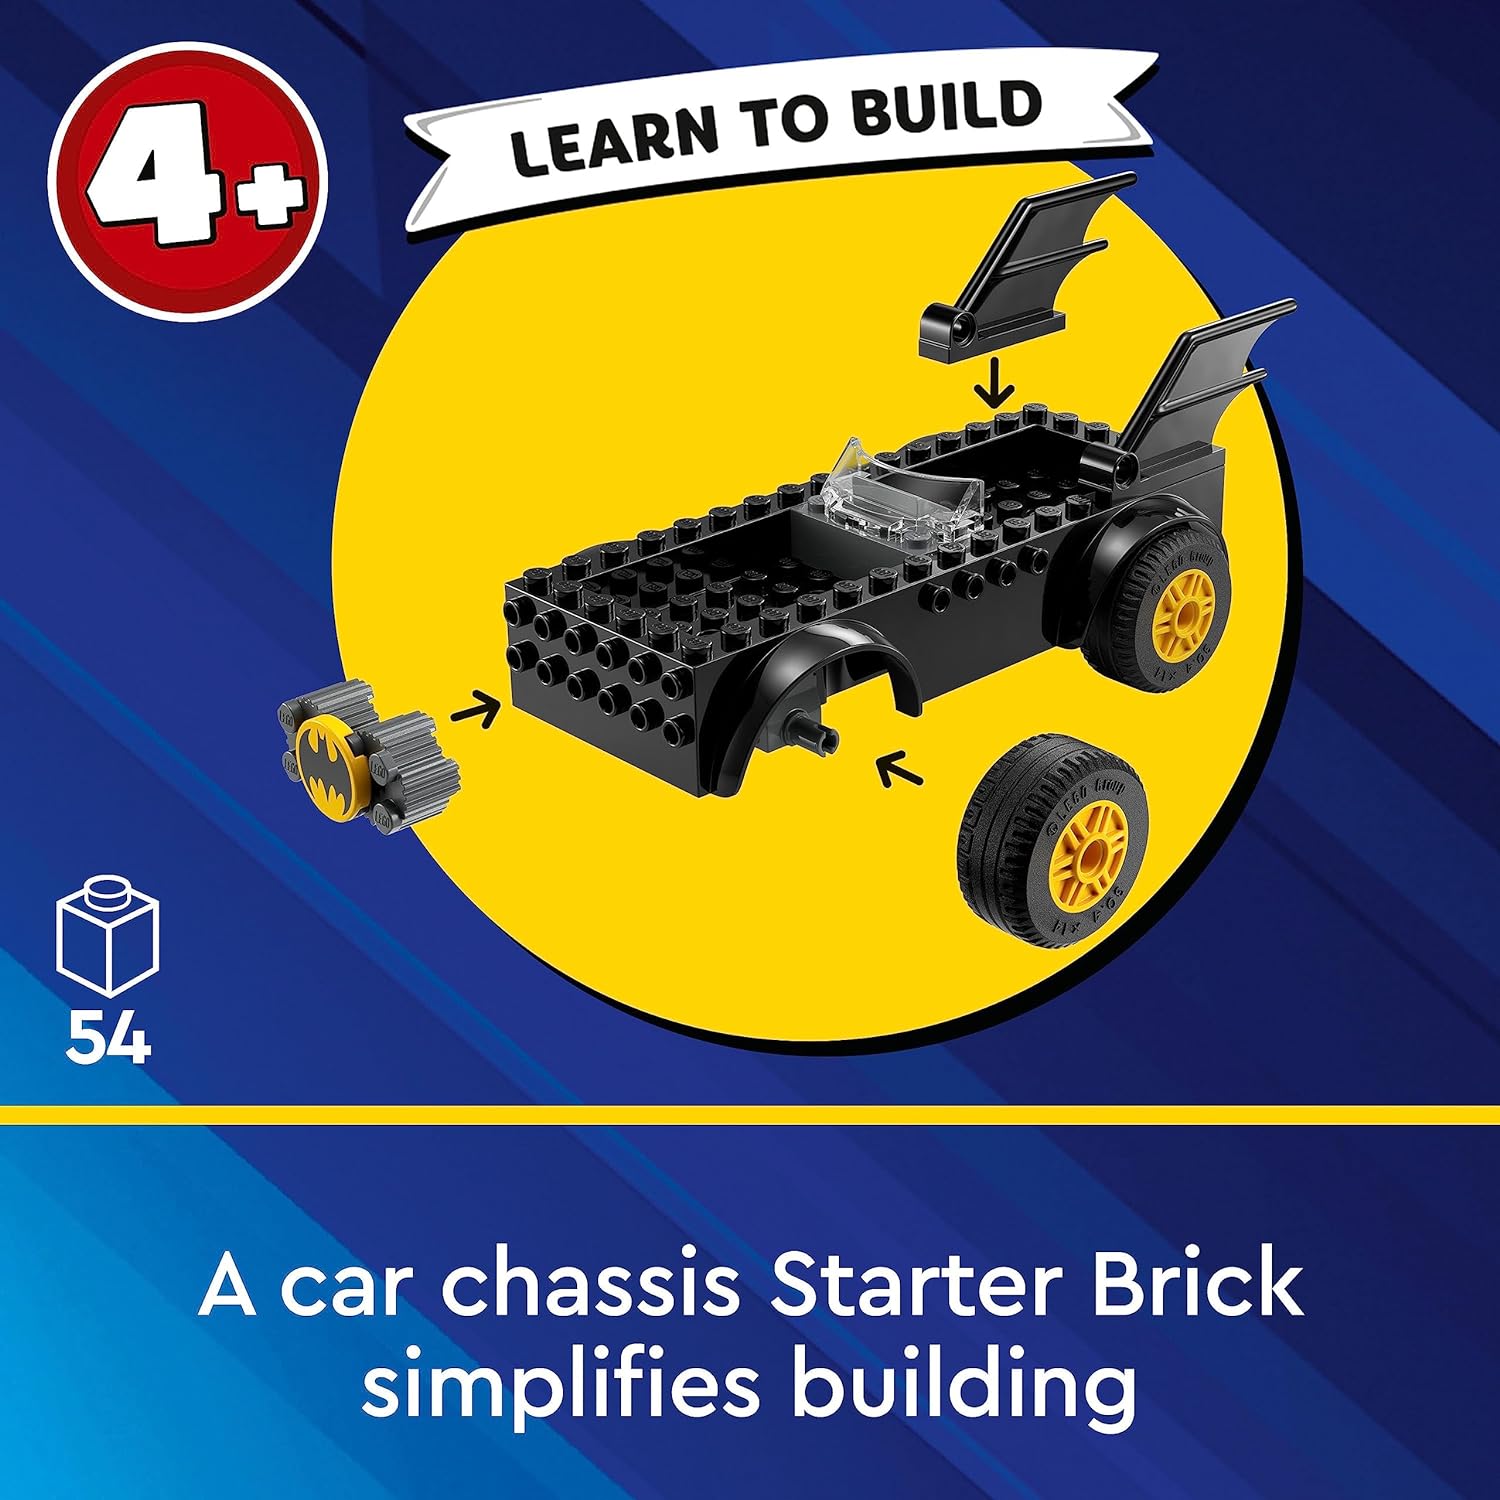 LEGO DC Batmobile Pursuit: Batman vs. The Joker Building Kit for Ages 5+